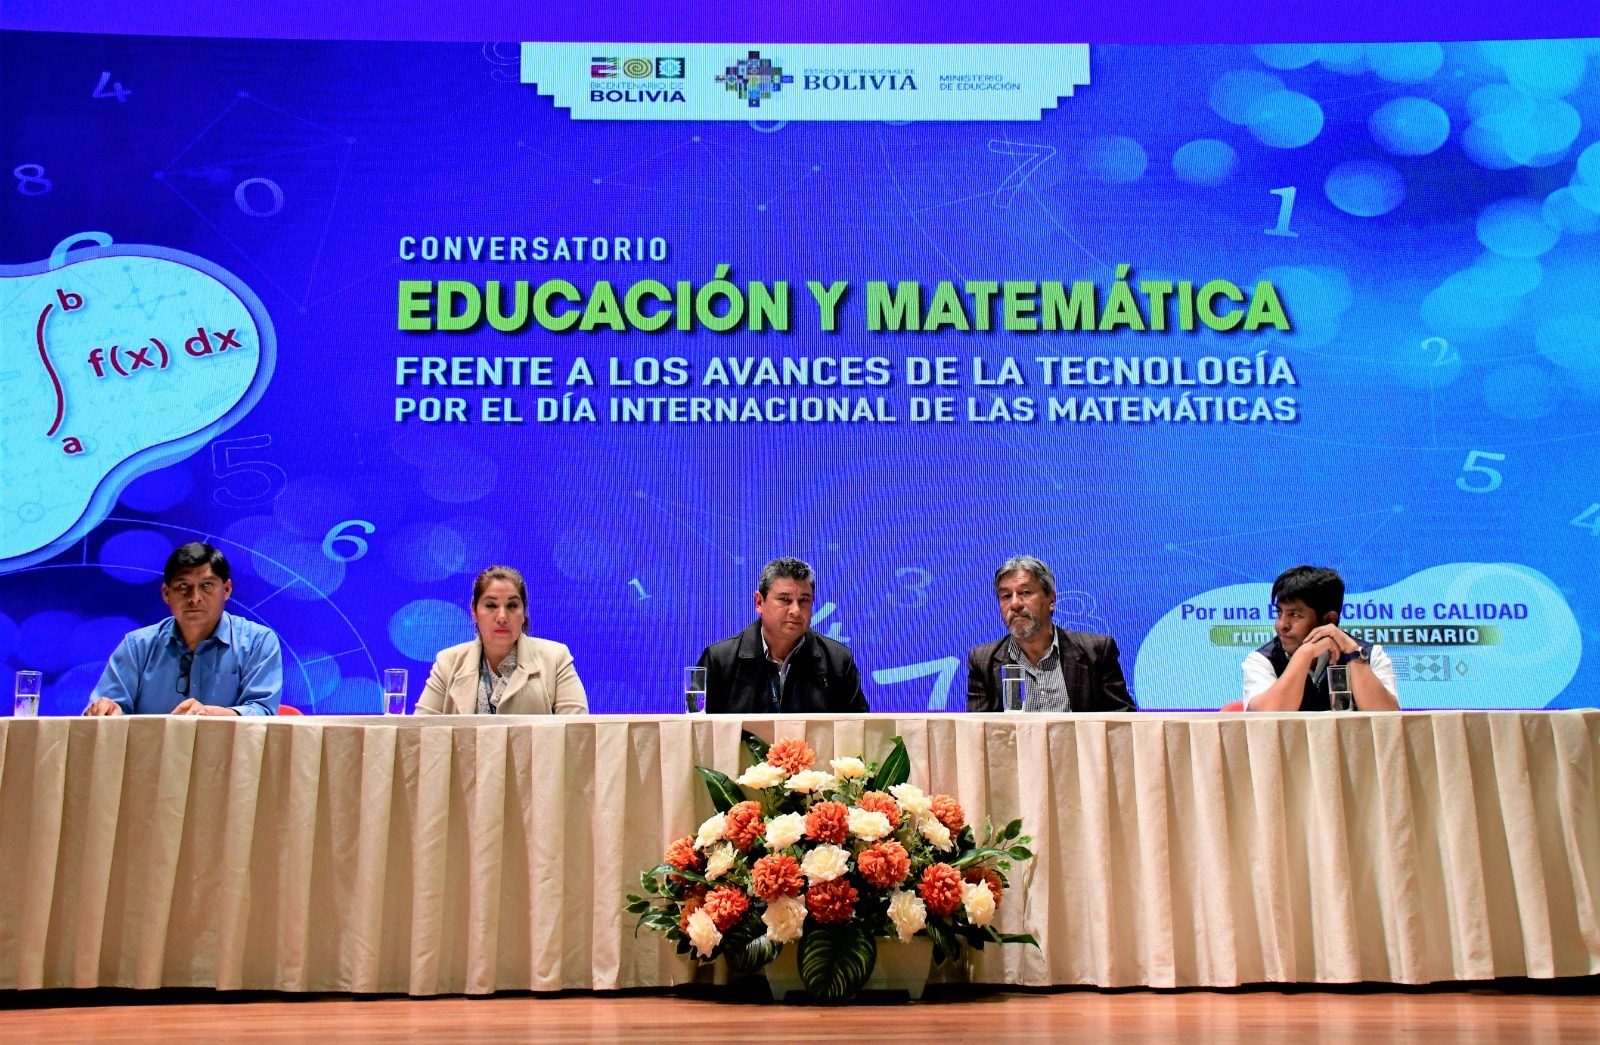 Conversatorio “Educación y Matemática frente a los avances de la tecnología” contó con la participación de más de 23 mil participantes